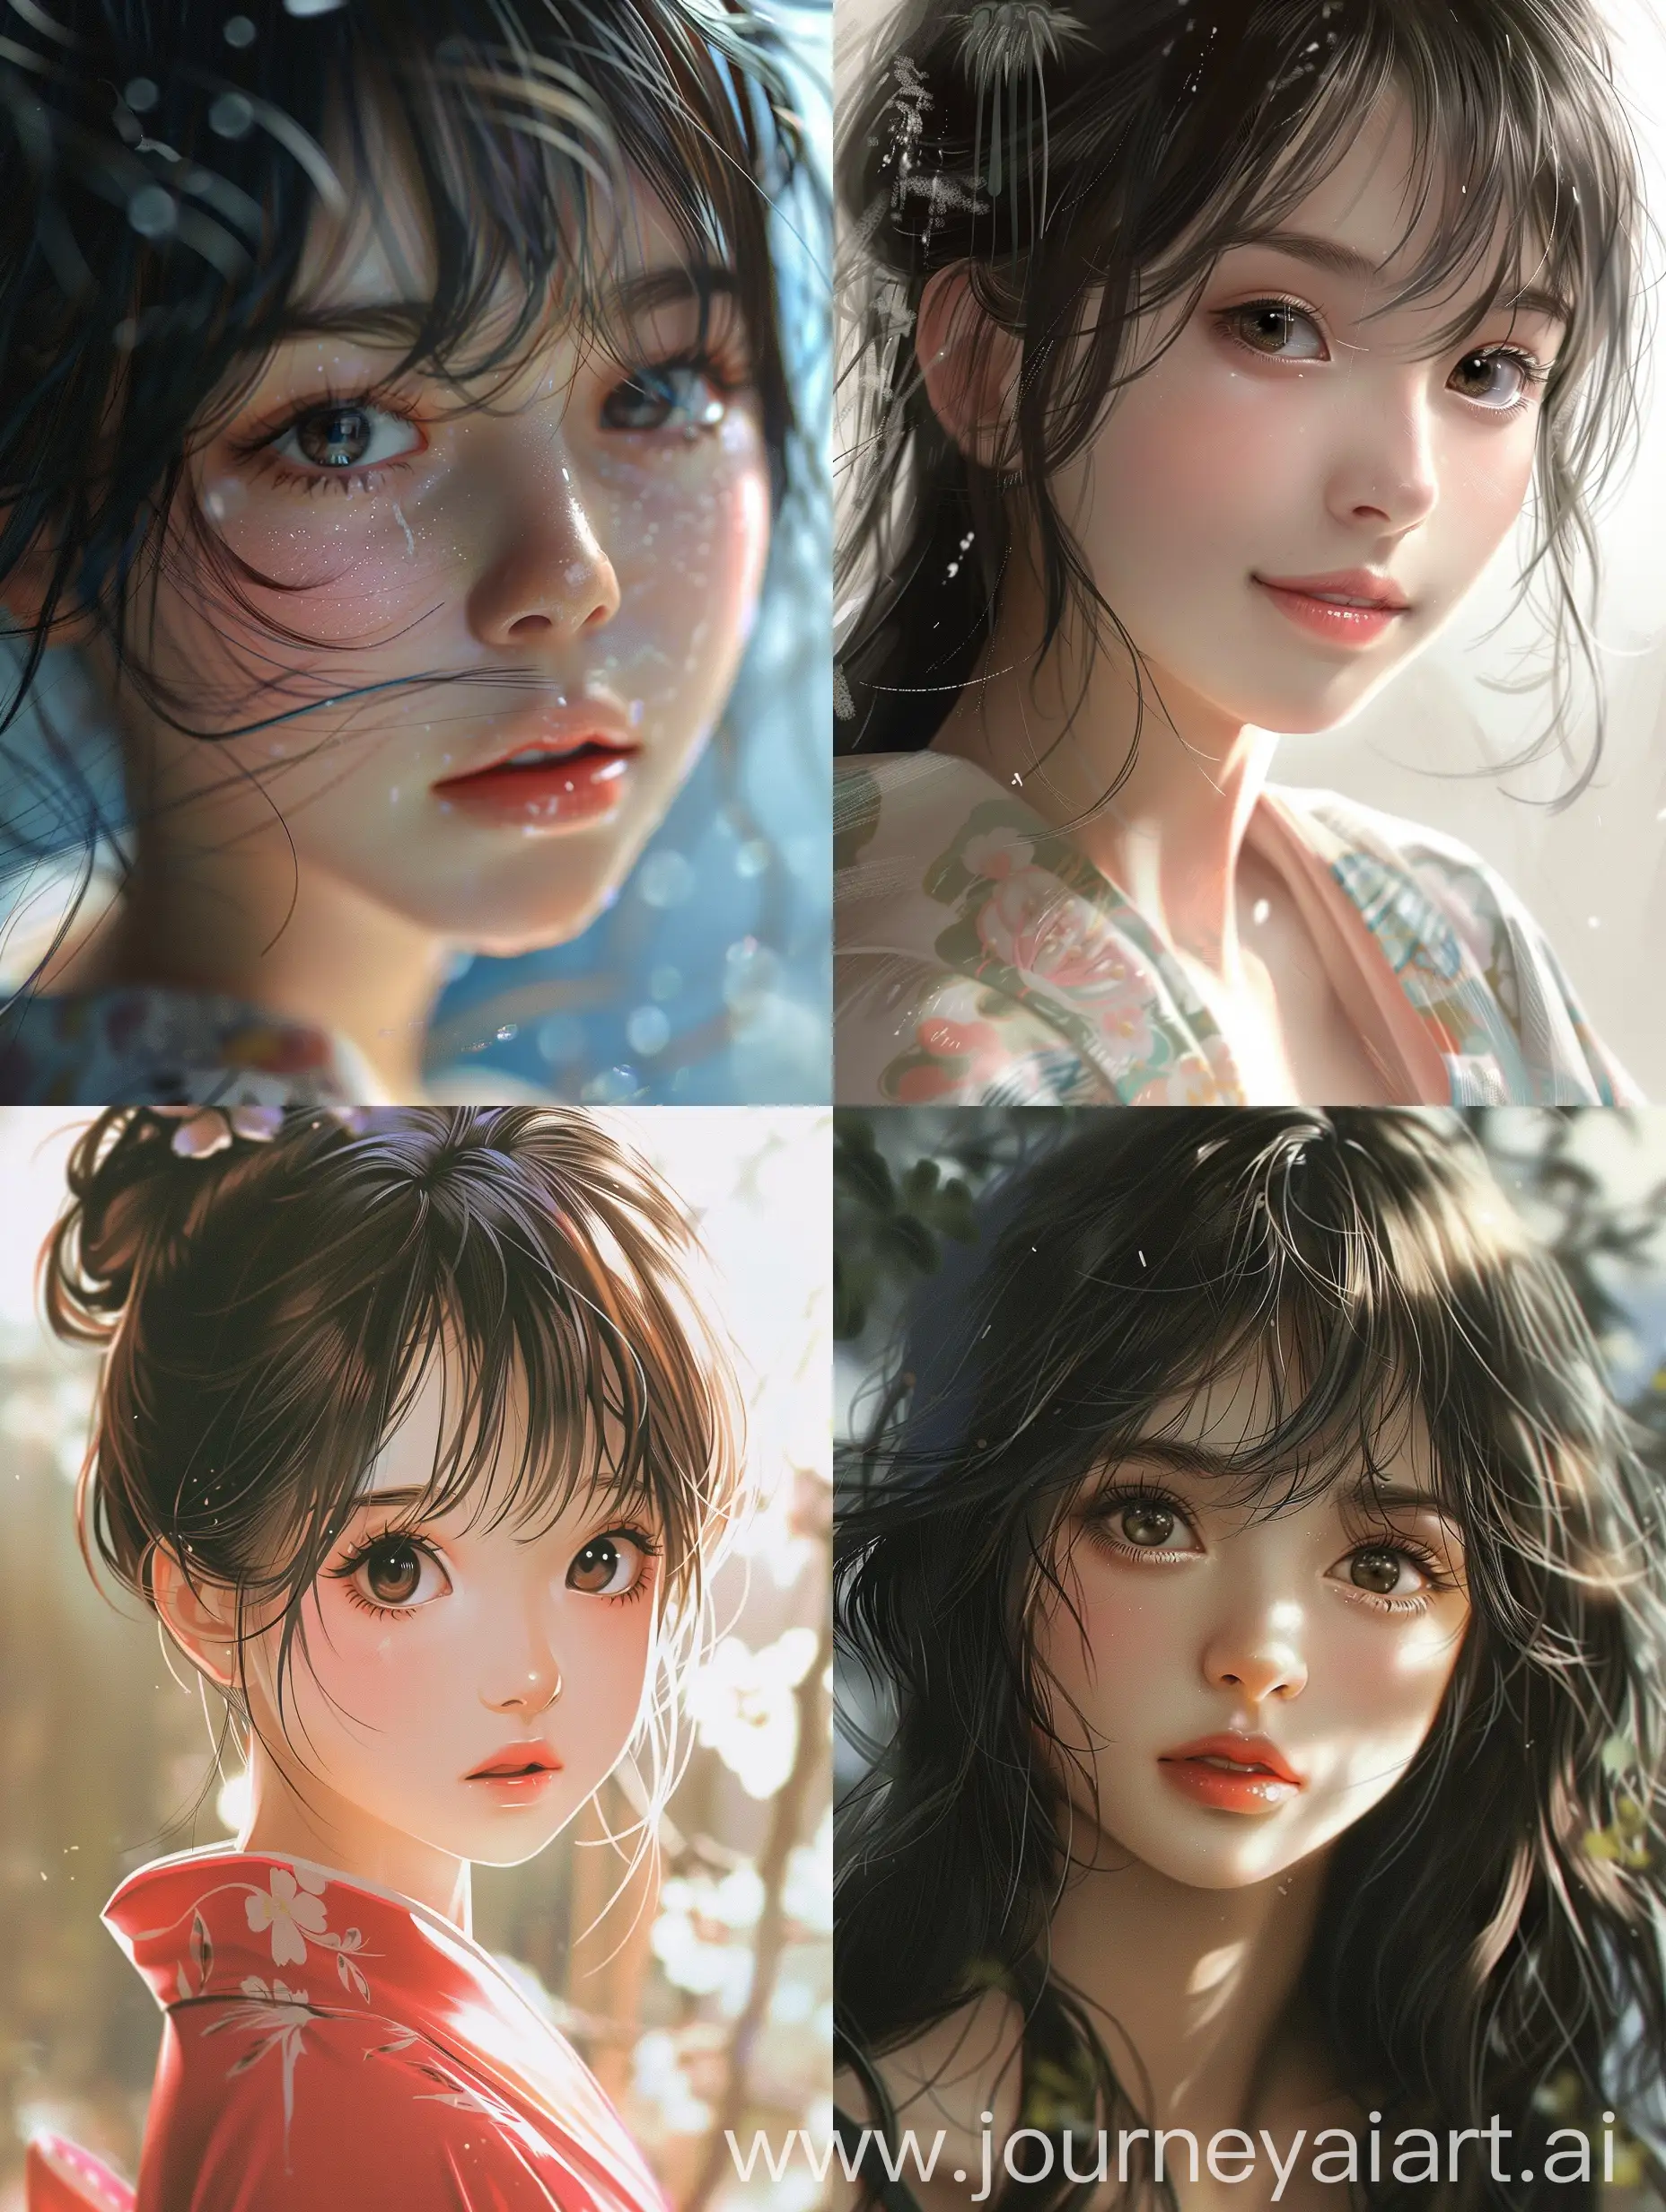 年轻女孩，日本动画风格，脸和五官非常非常美丽